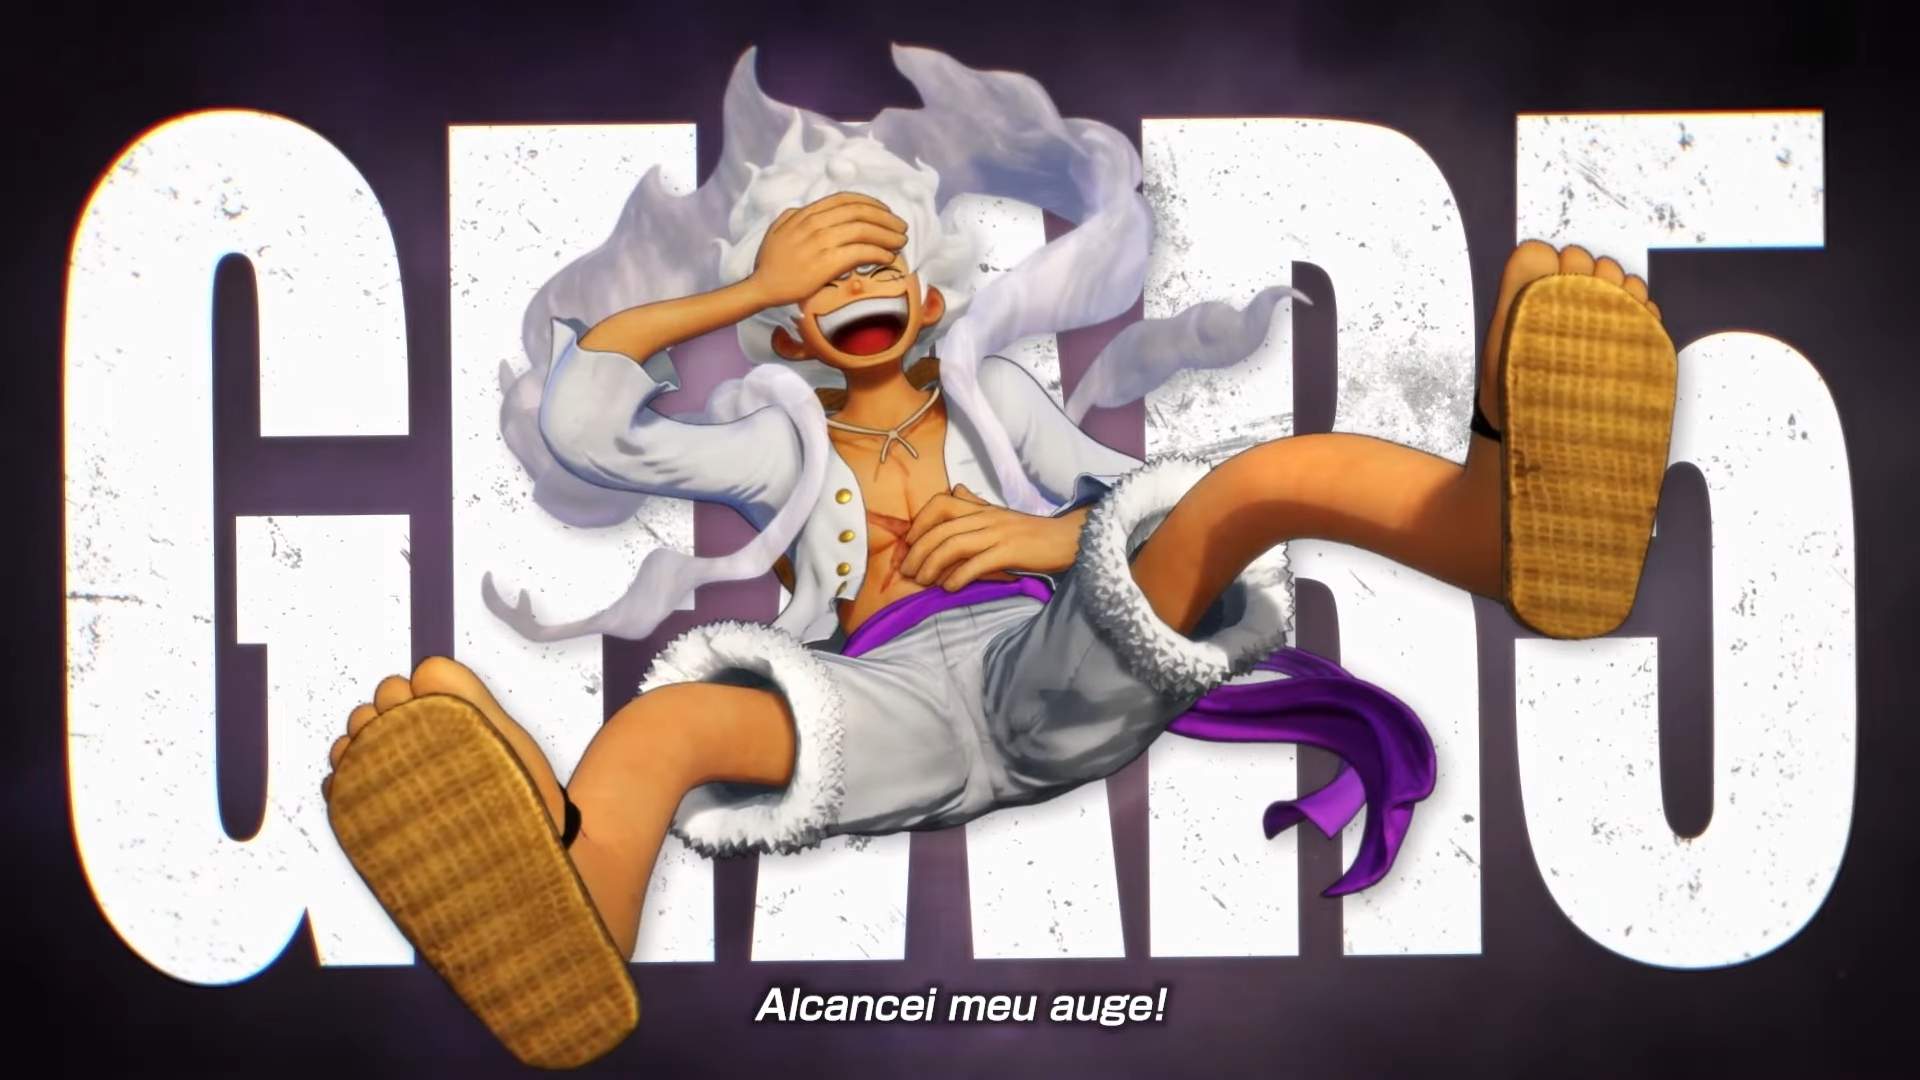 One Piece: conheça todas as transformações de Luffy no anime